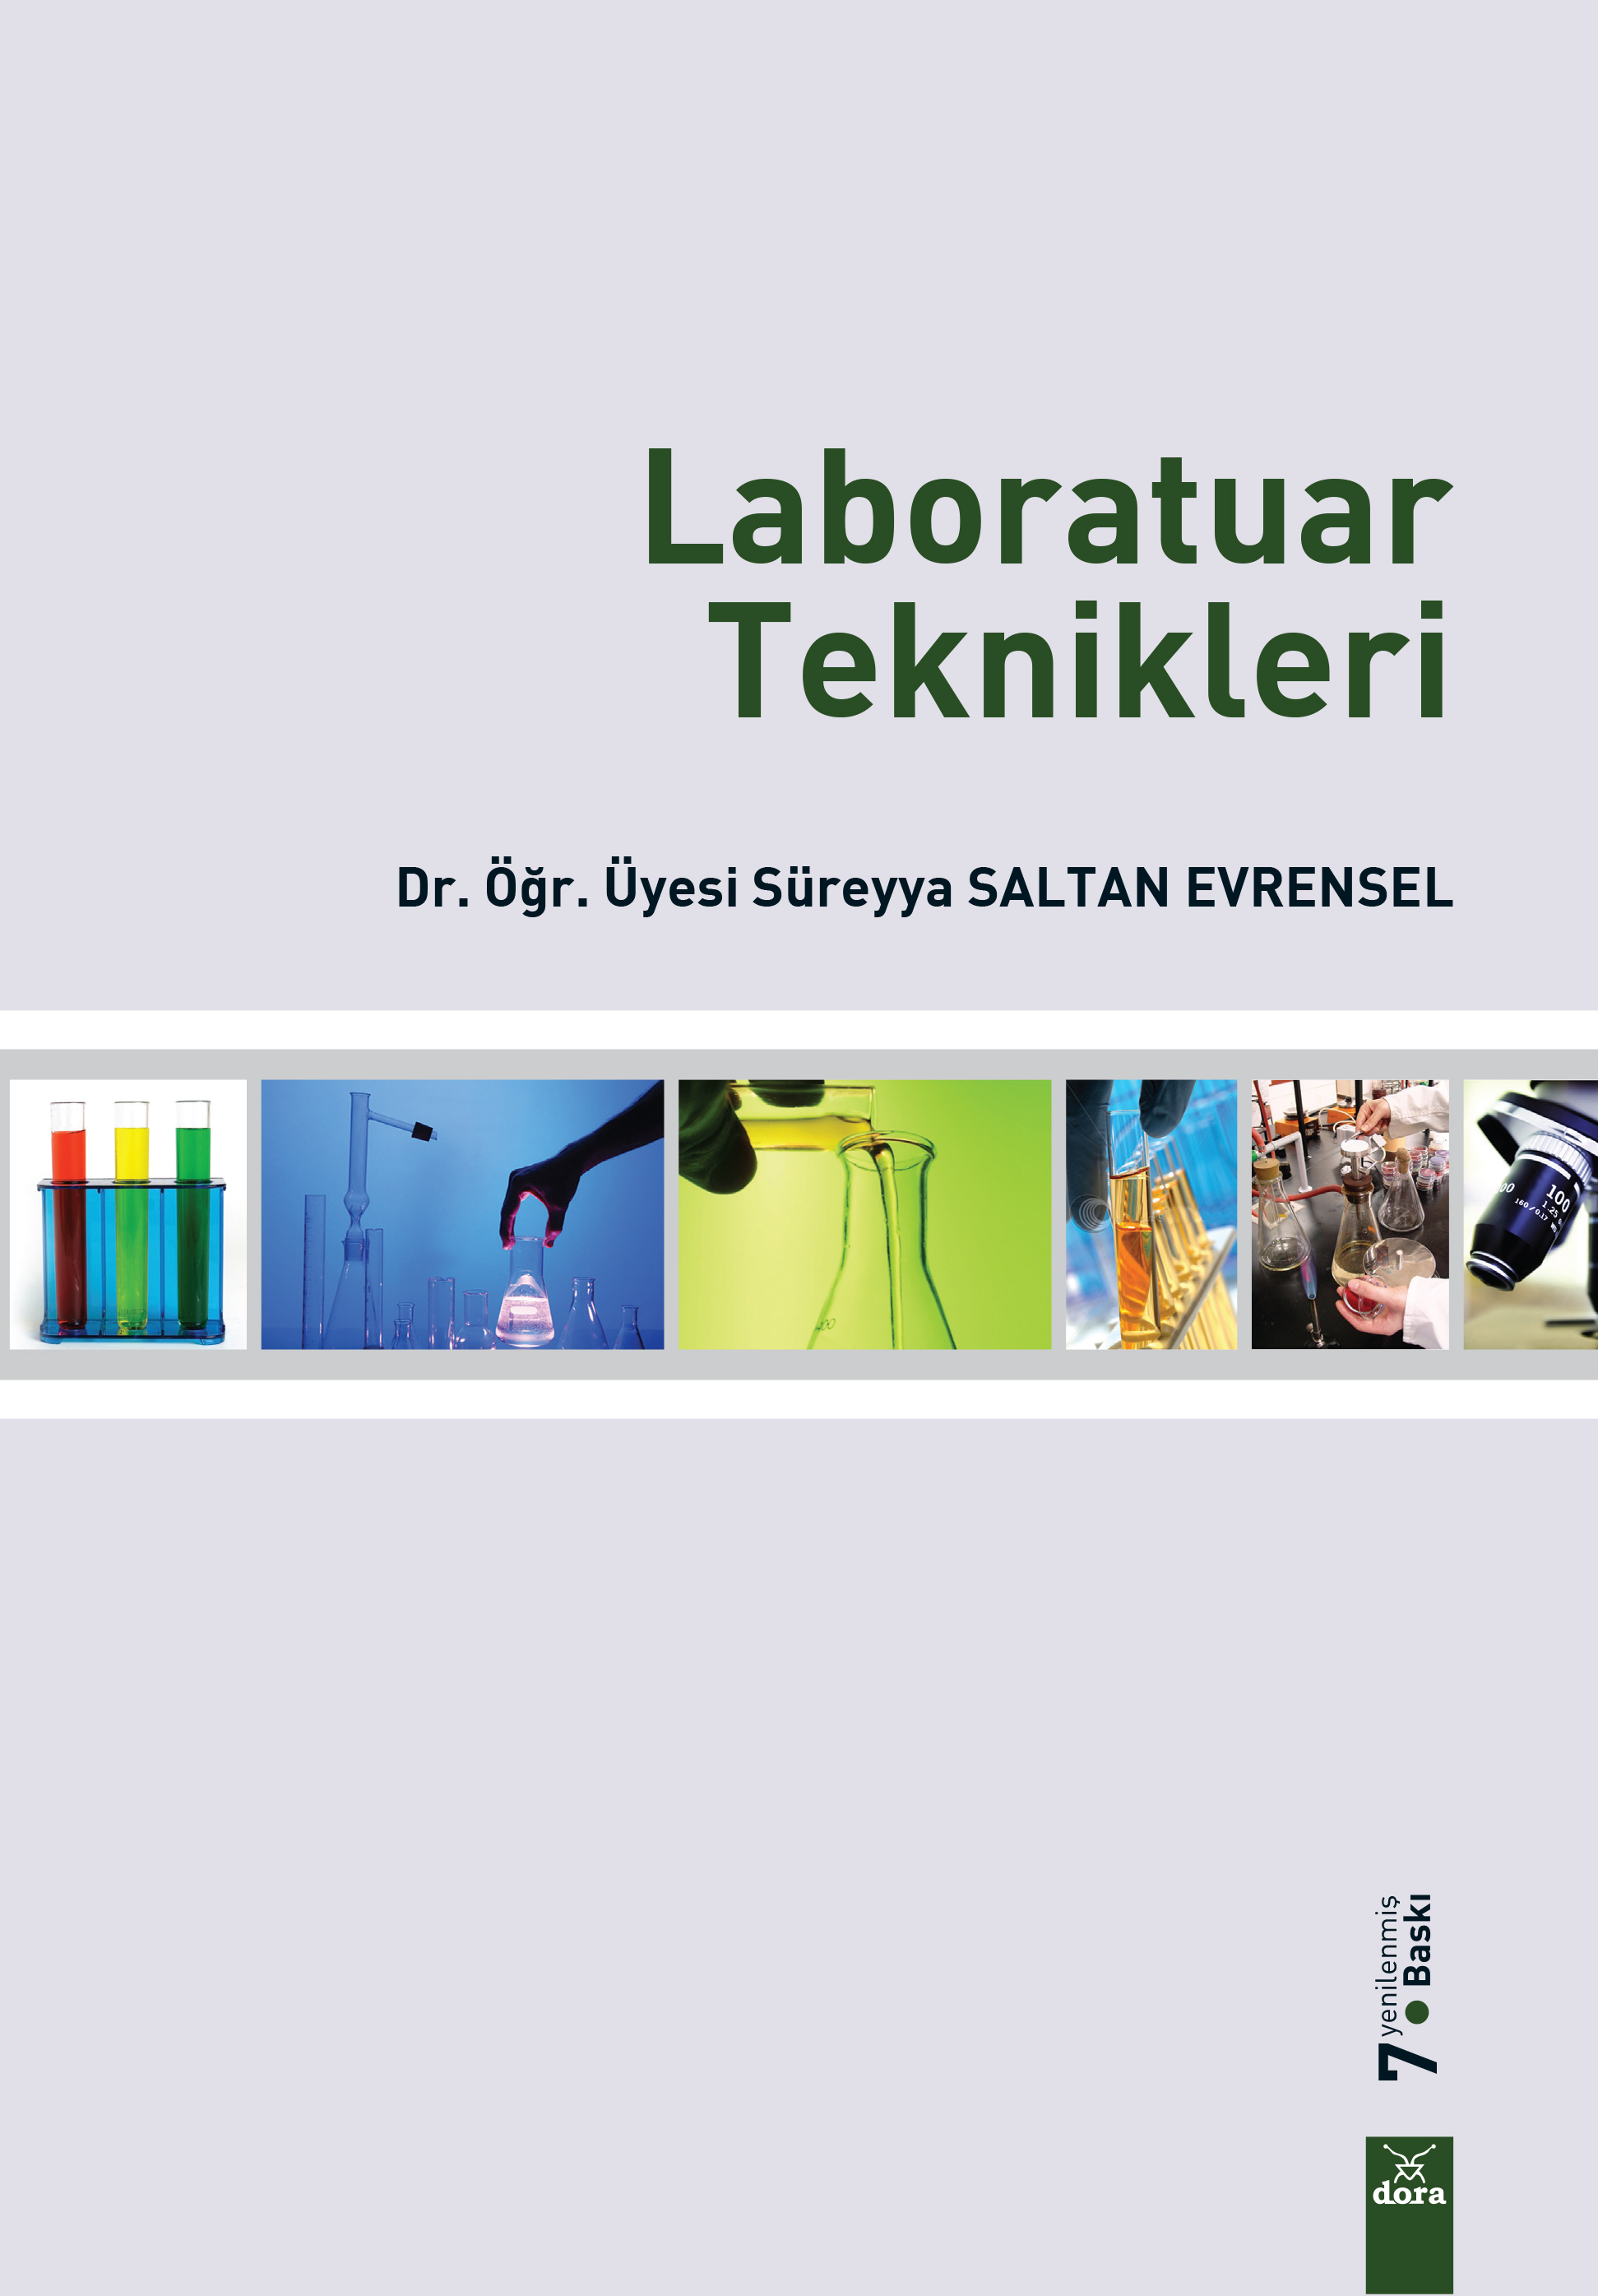 Laboratuar Teknikleri | 99 | Dora Yayıncılık